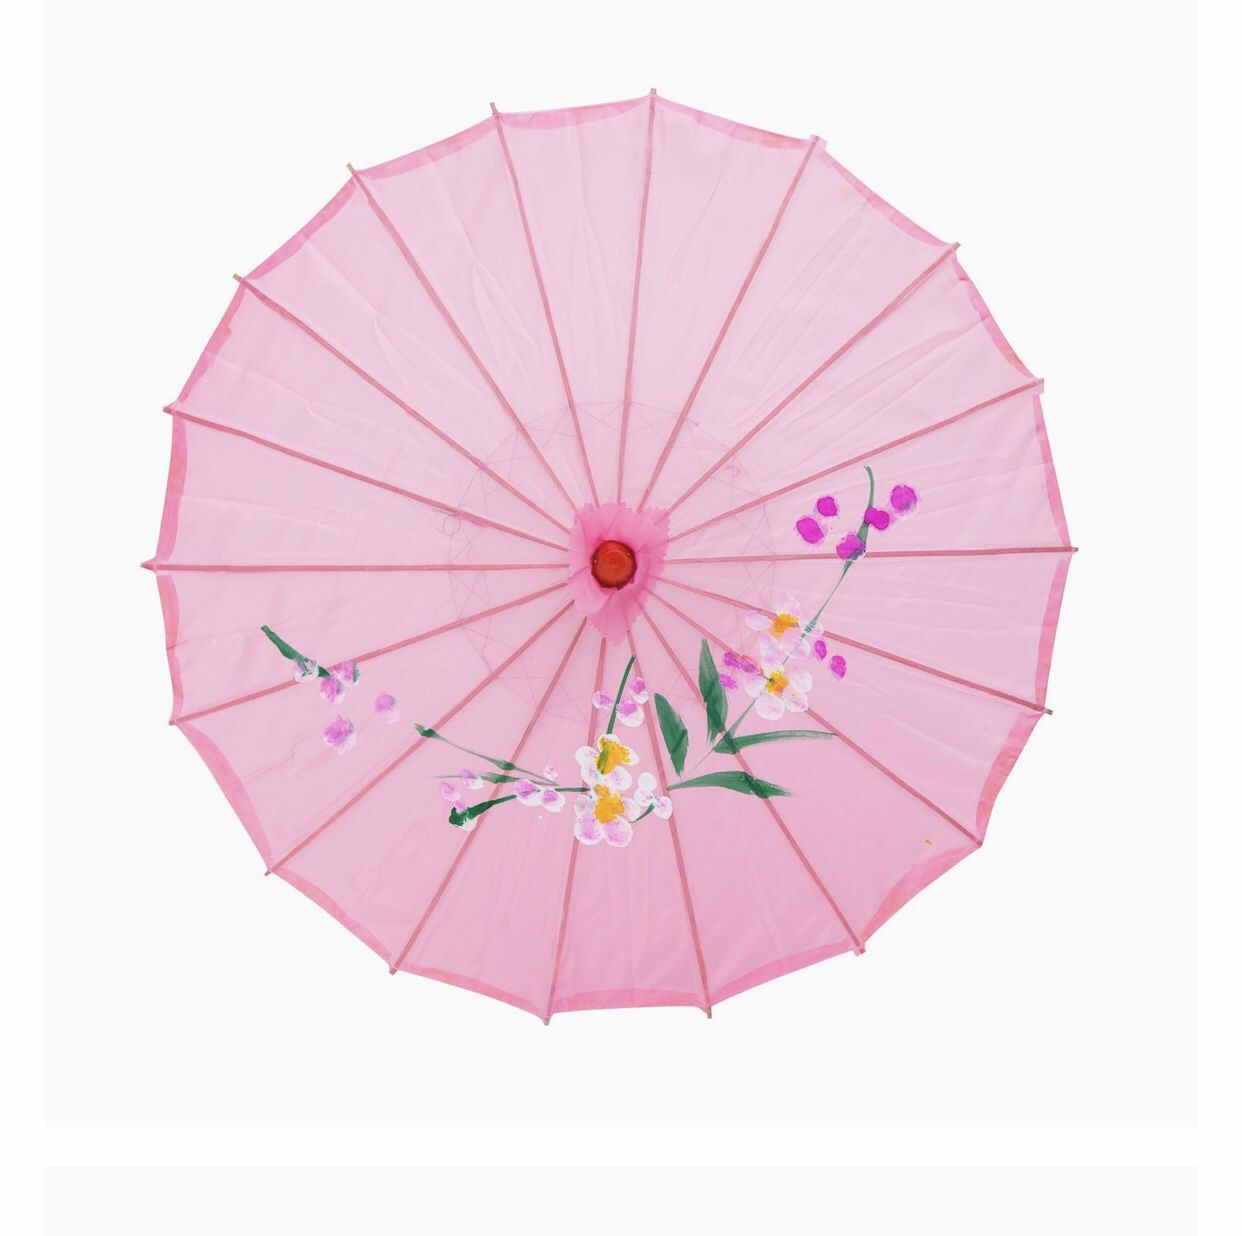 Paper parasols/umbrellas